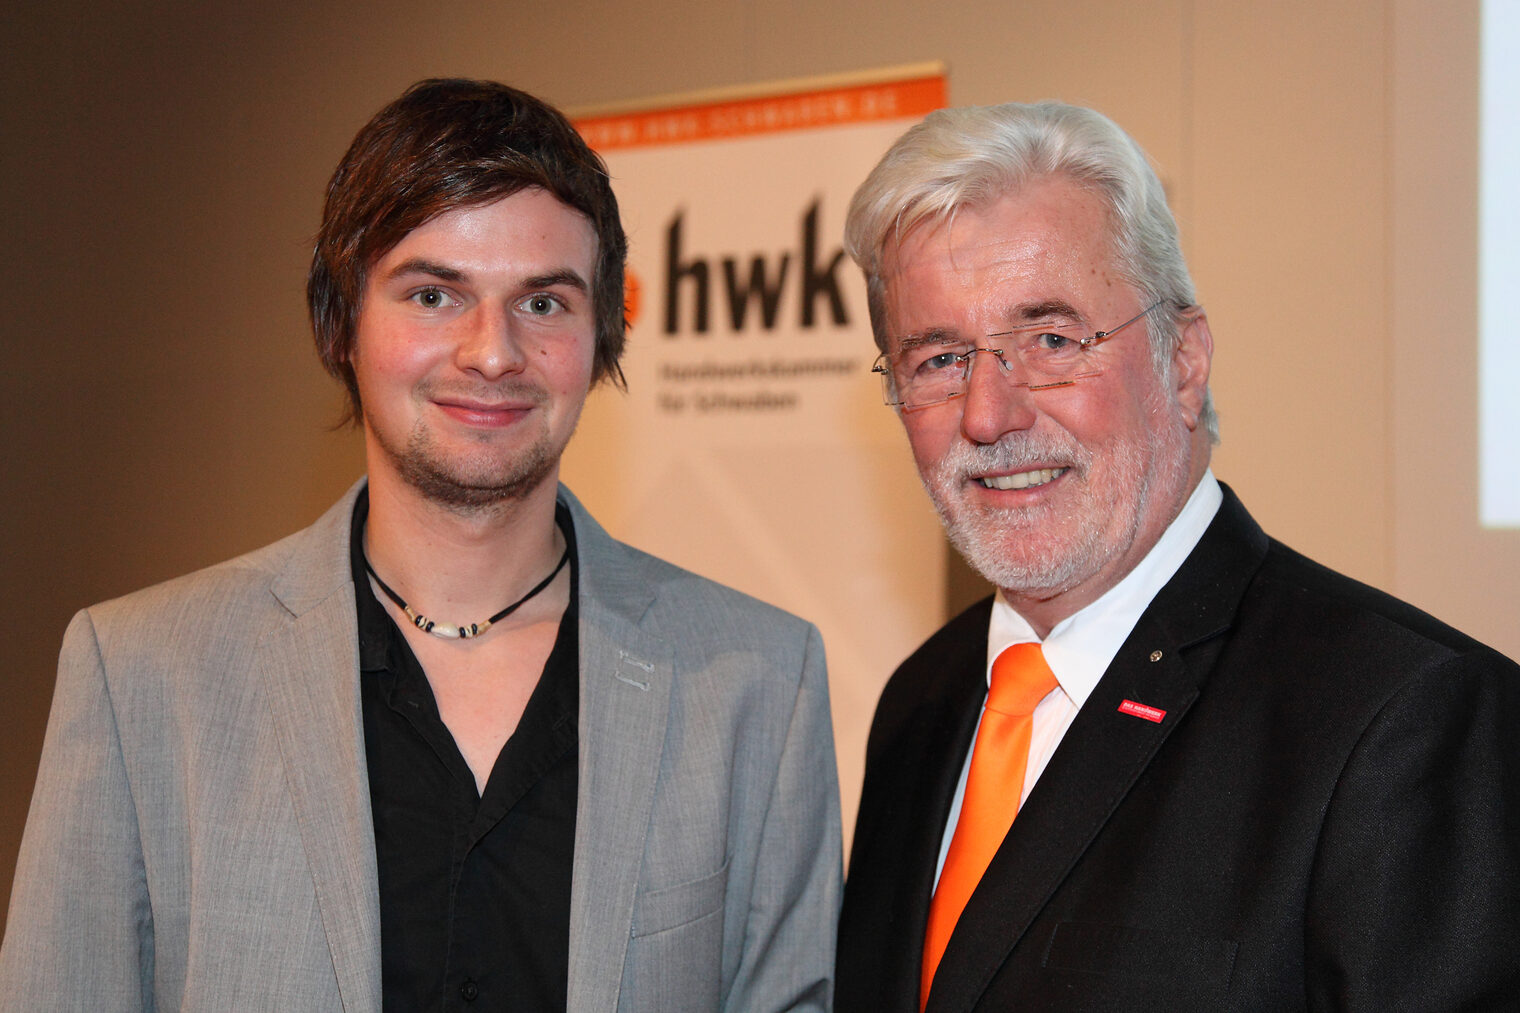 Betriebswirte 2013 - Robert Ibele und Jürgen Schmid